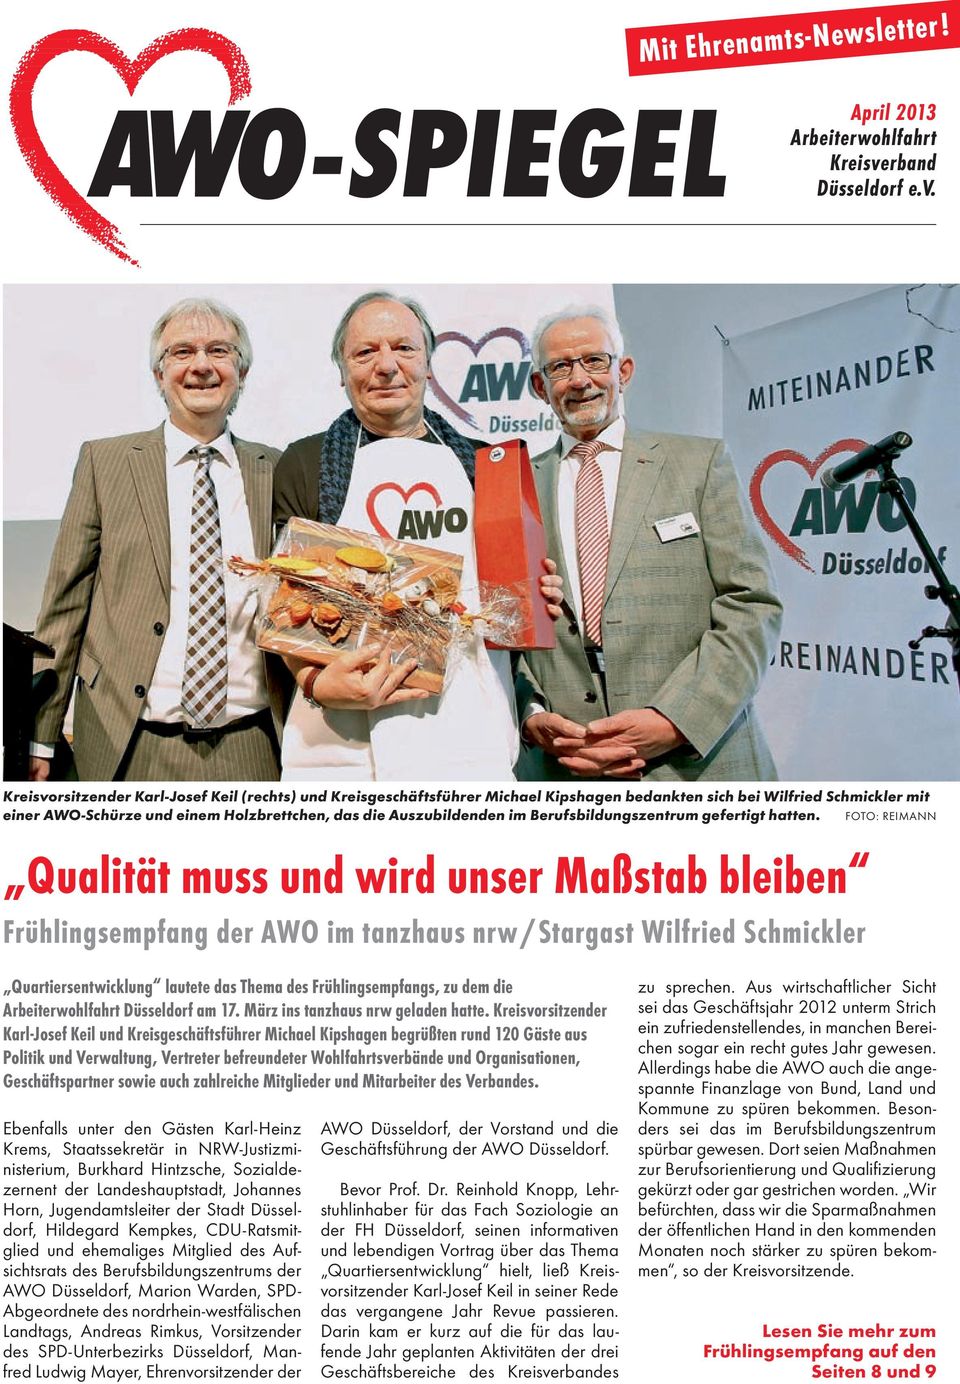 Kreisvorsitzender Karl-Josef Keil (rechts) und Kreisgeschäftsführer Michael Kipshagen bedankten sich bei Wilfried Schmickler mit einer AWO-Schürze und einem Holzbrettchen, das die Auszubildenden im